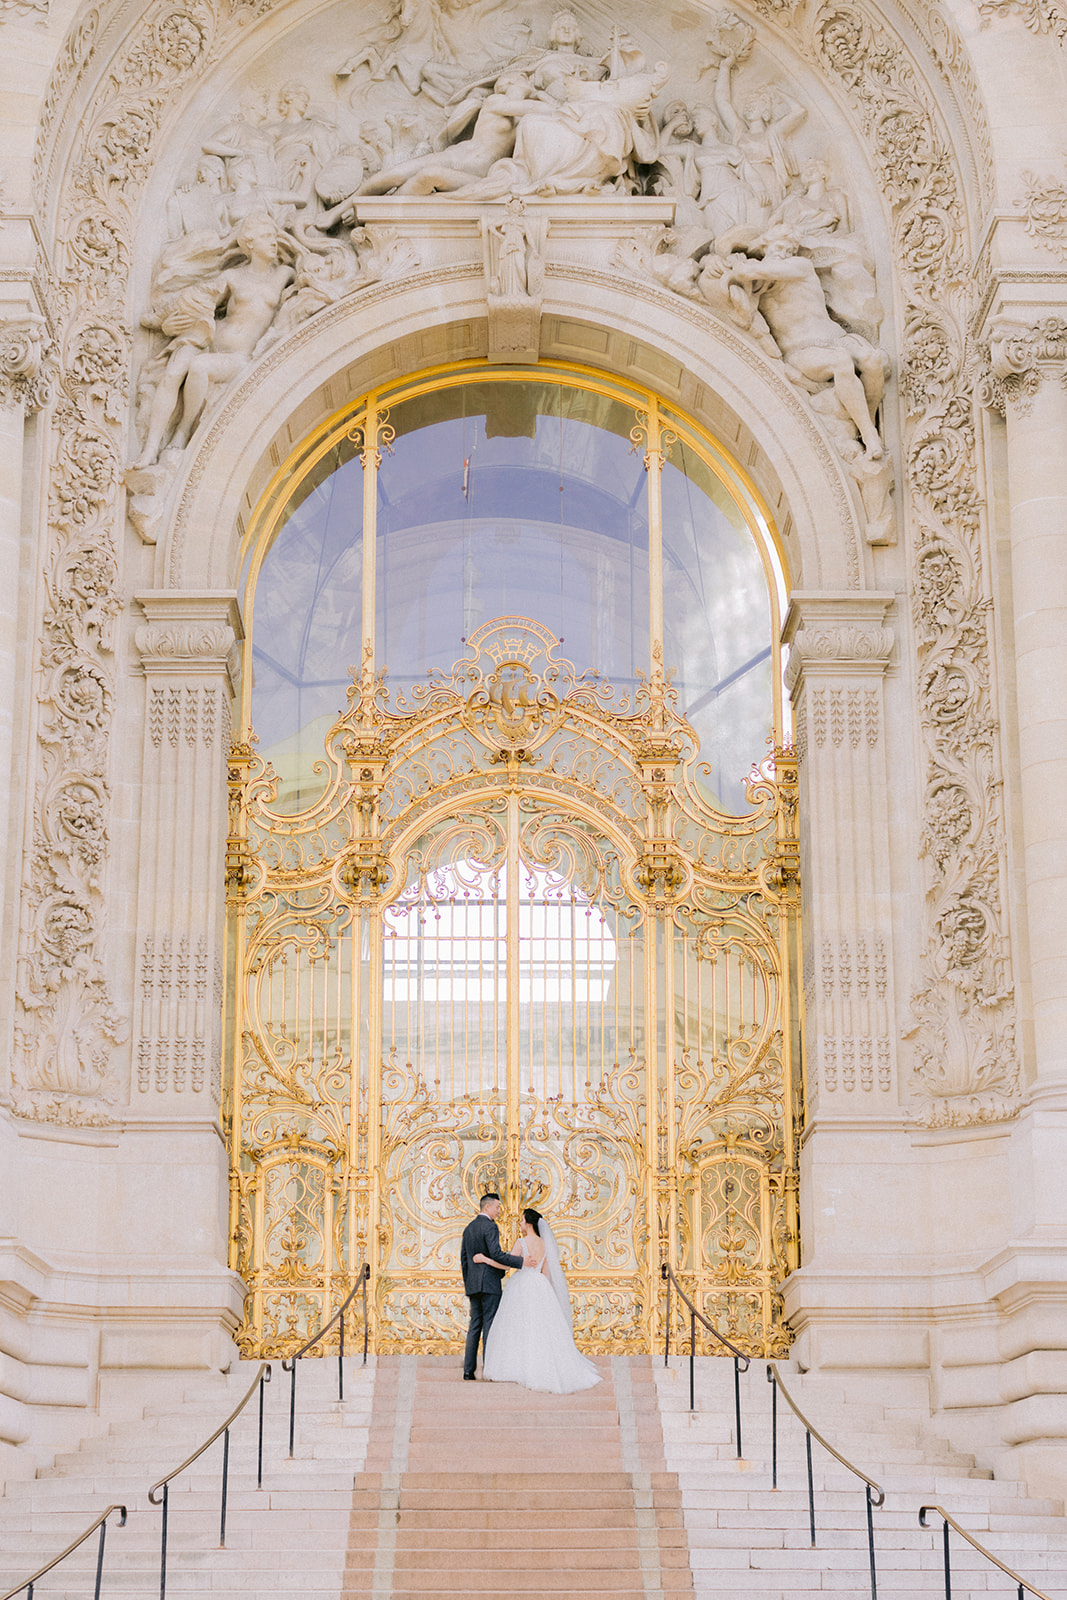 Couple celebrating their love in front of grand golden door in Paris